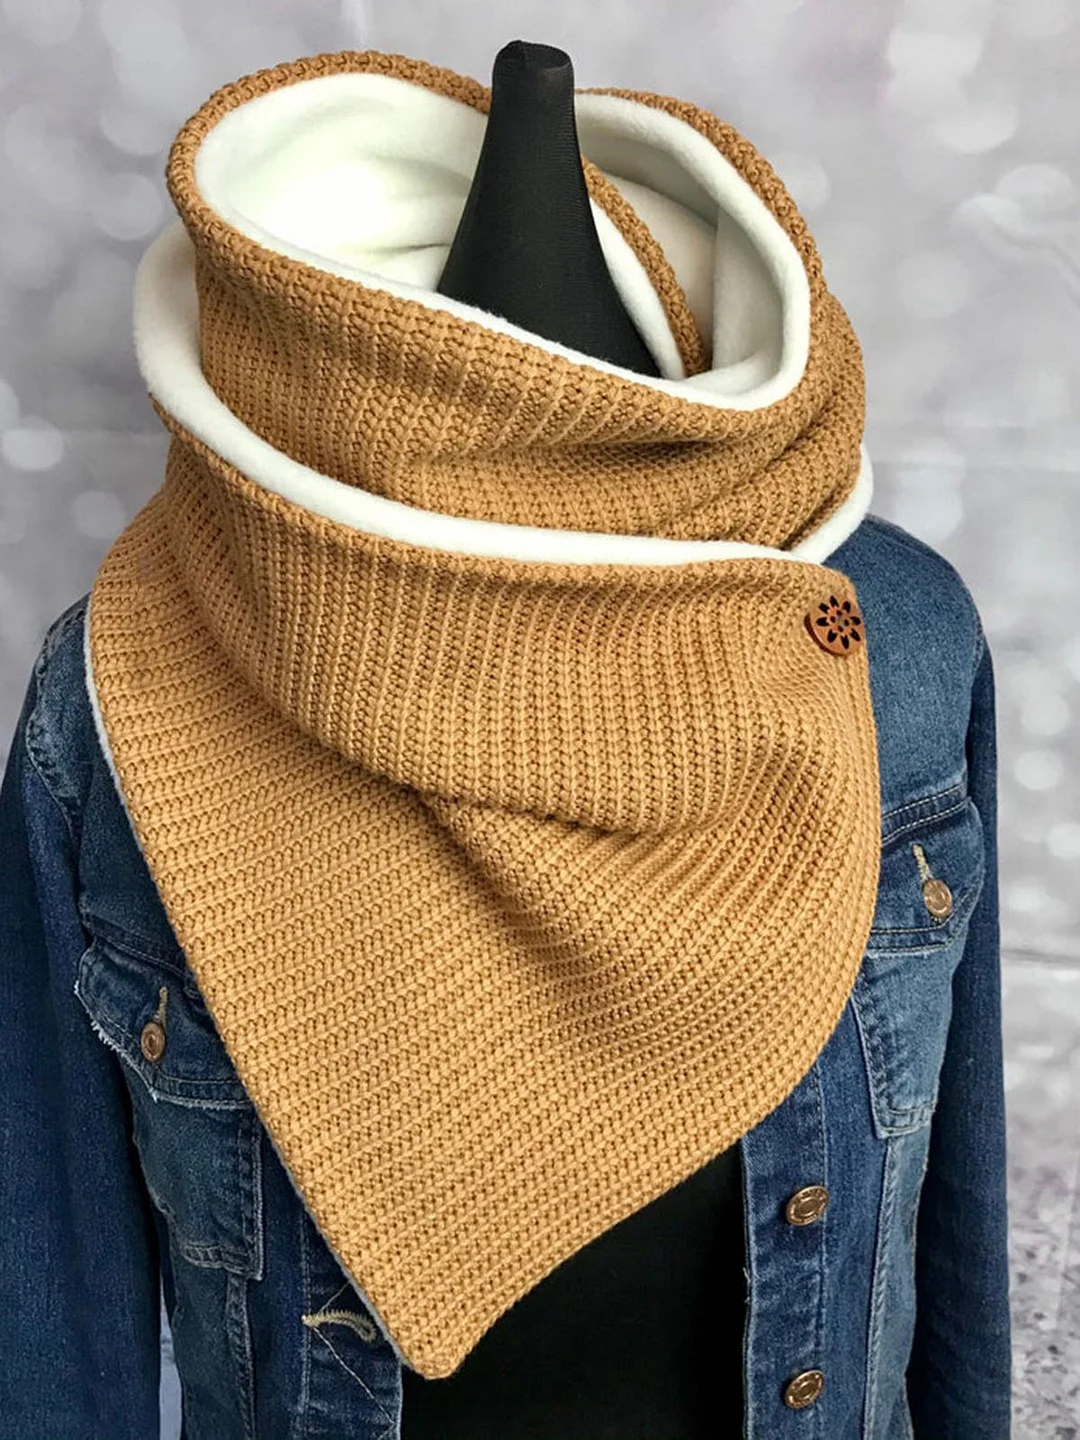 Casual warm scarf